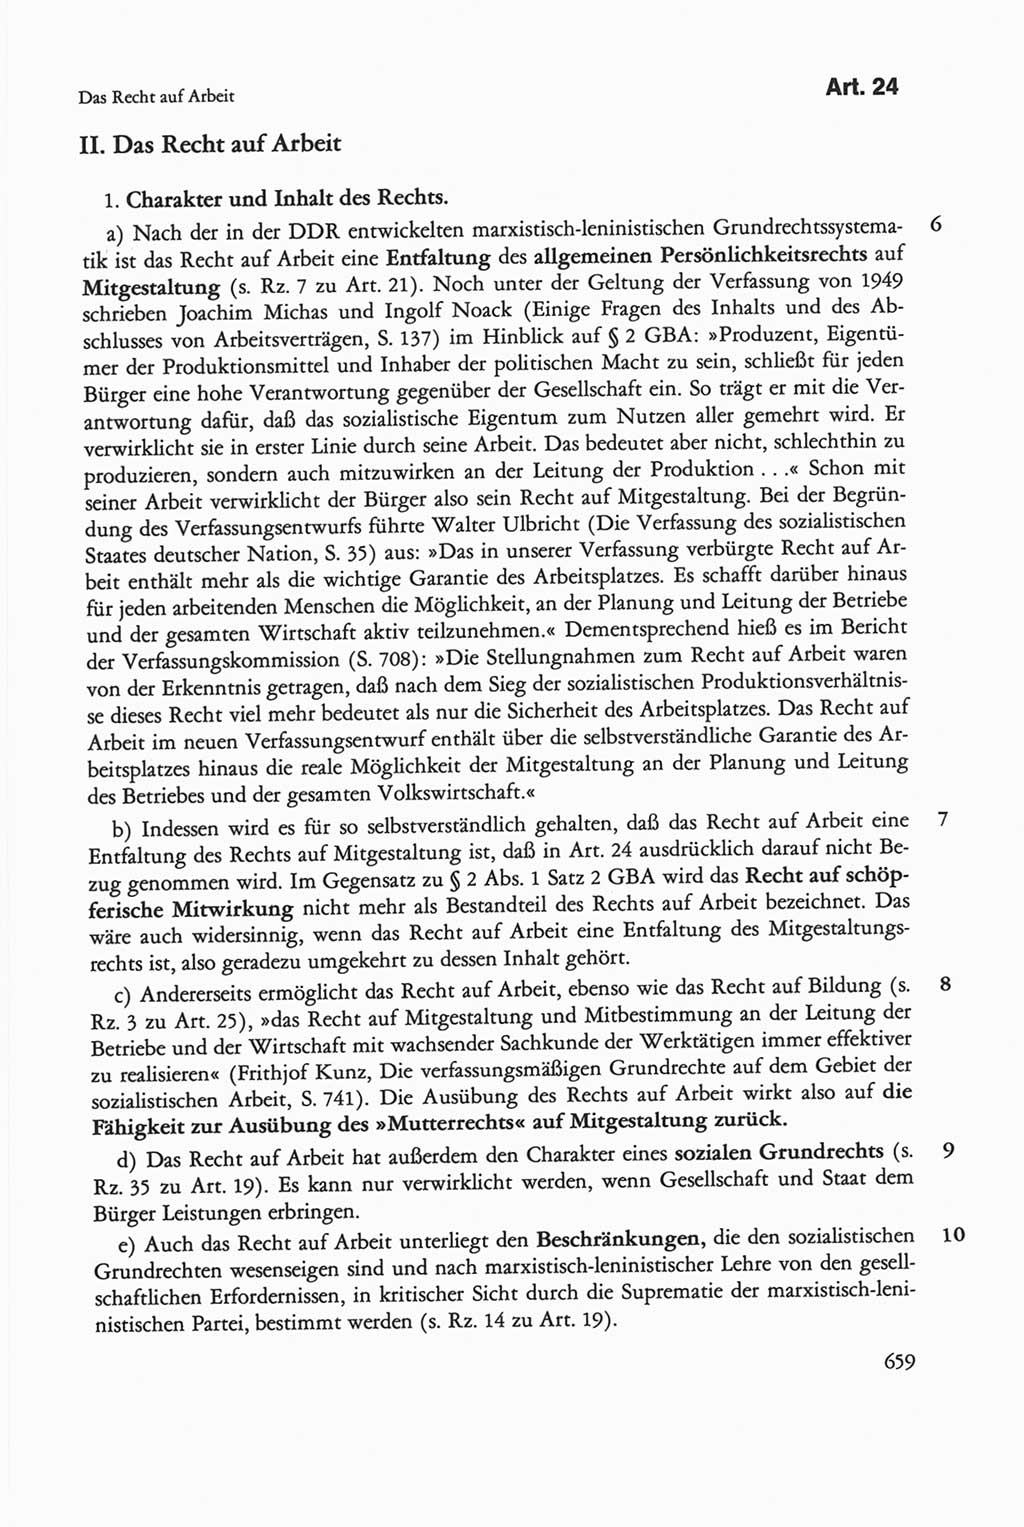 Die sozialistische Verfassung der Deutschen Demokratischen Republik (DDR), Kommentar 1982, Seite 659 (Soz. Verf. DDR Komm. 1982, S. 659)